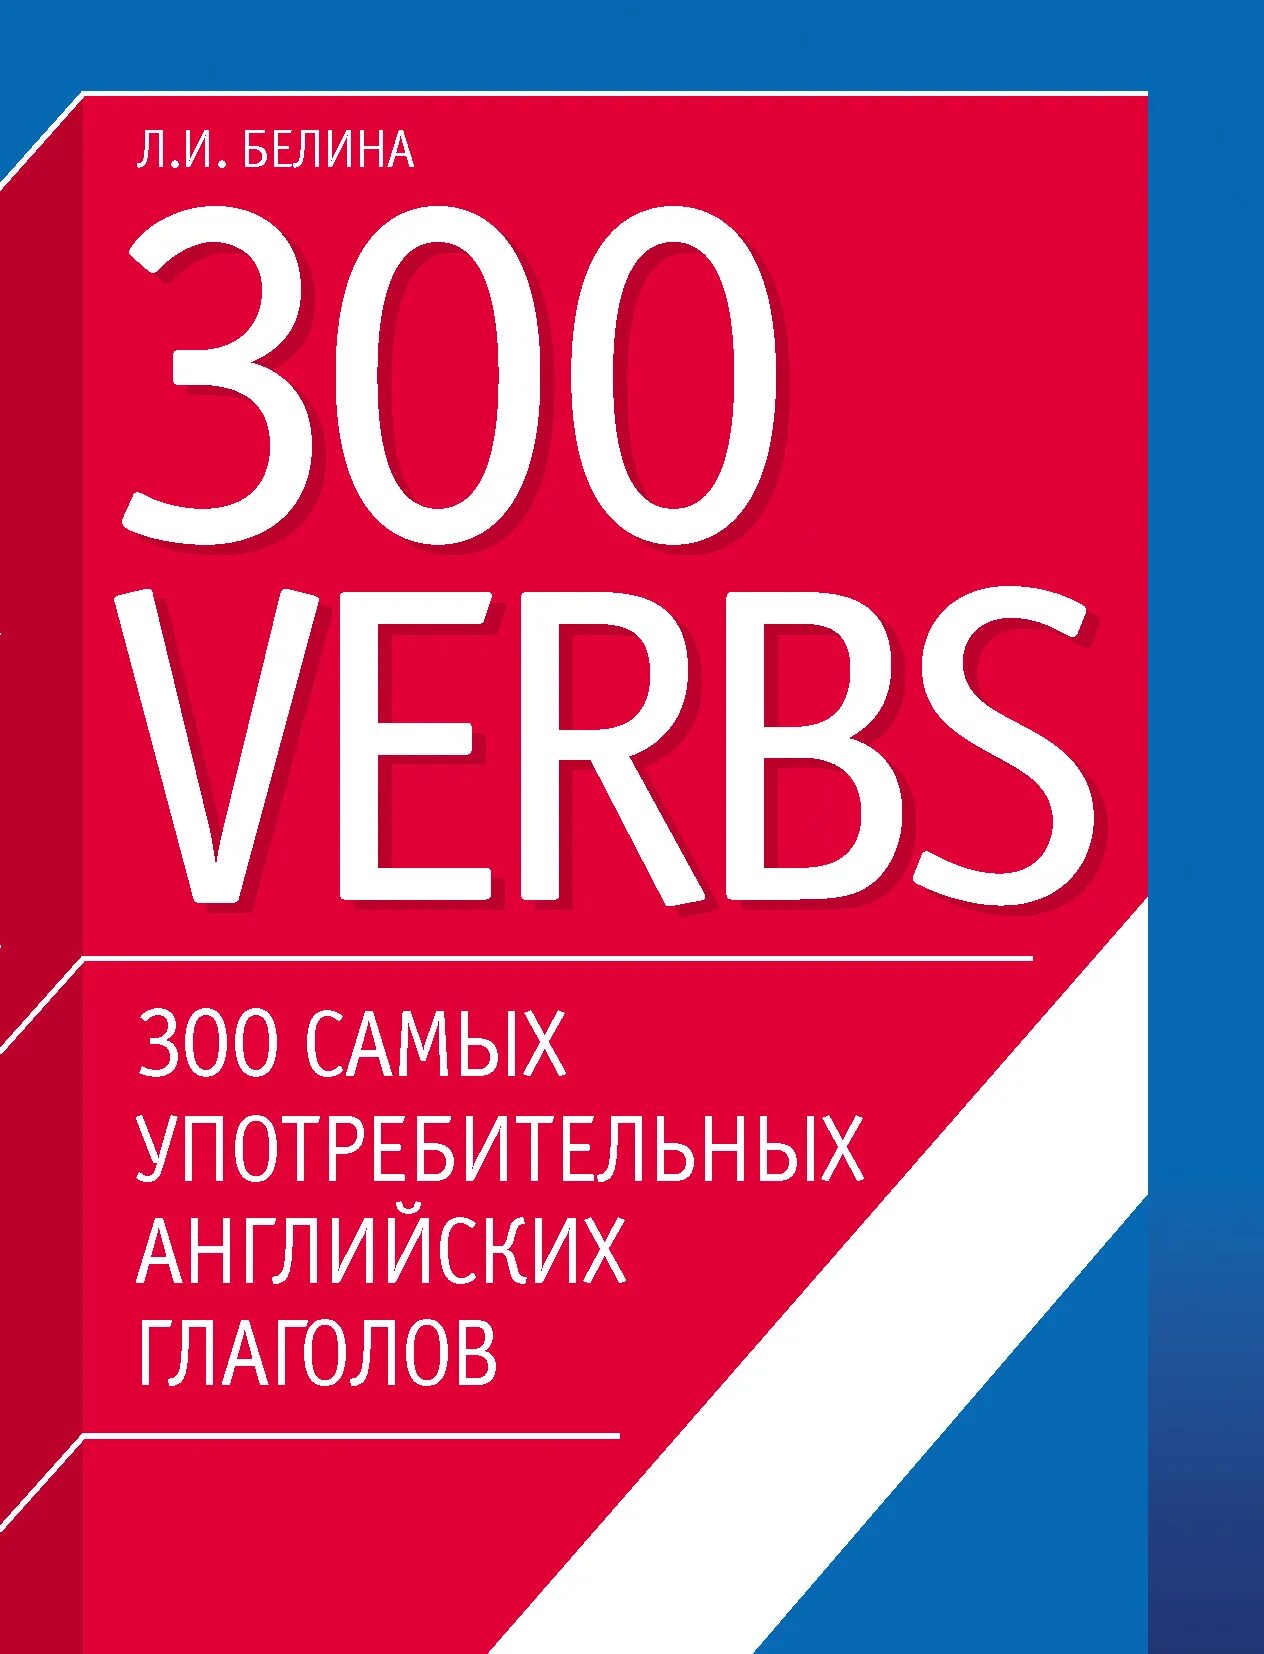 300 Английских глаголов. 300 Самых употребляемых английских глаголов. 300 Самых употребительных английских глаголов. Белина л. и.. Белина 300 verbs. Популярные английские глаголы